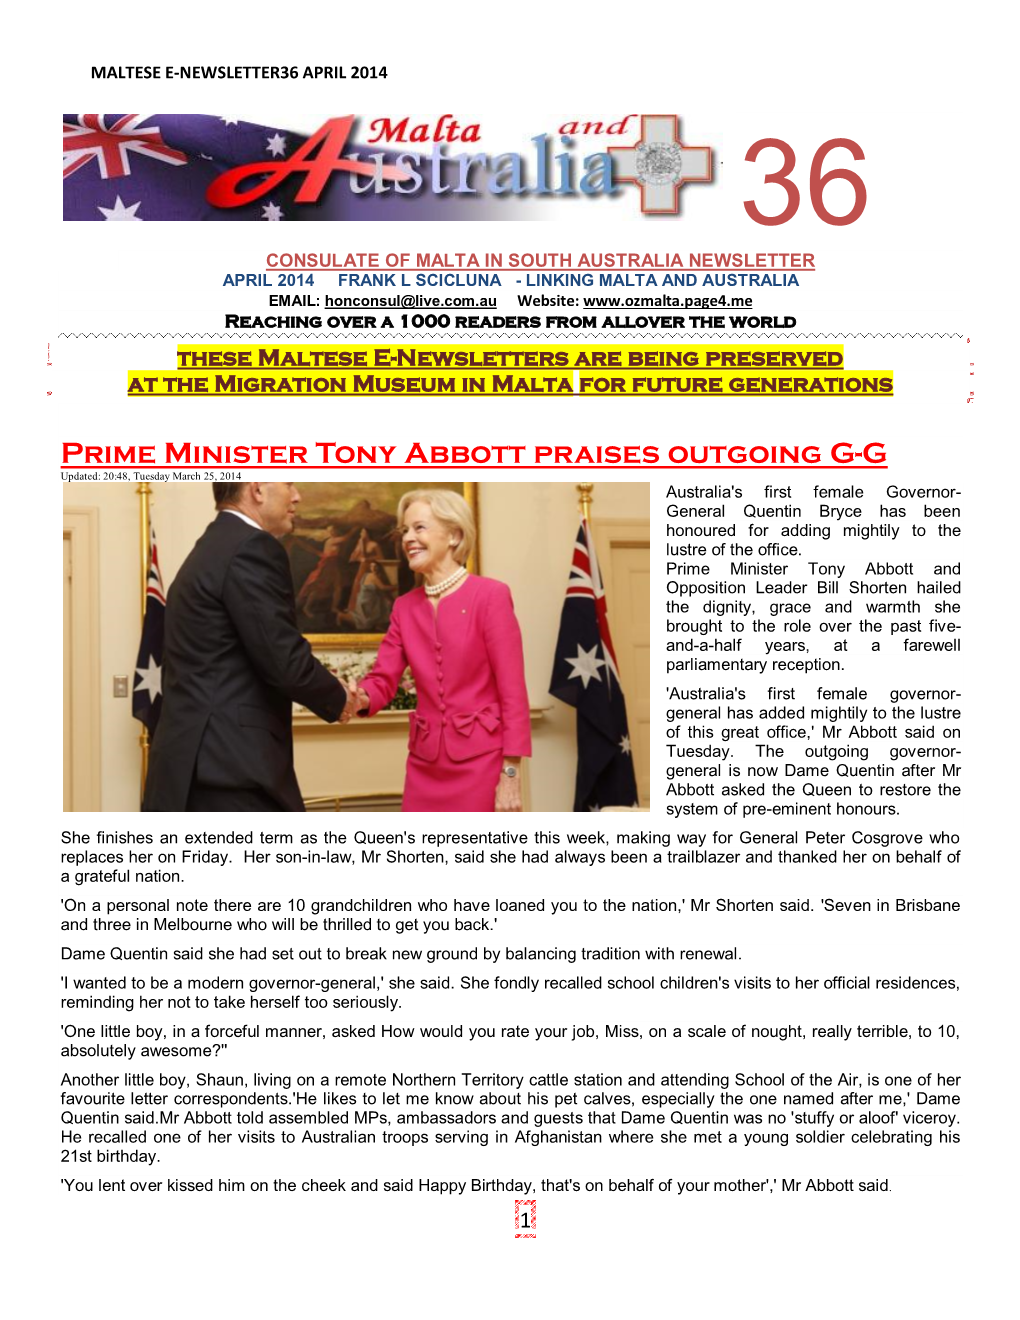 Prime Minister Tony Abbott Praises Outgoing